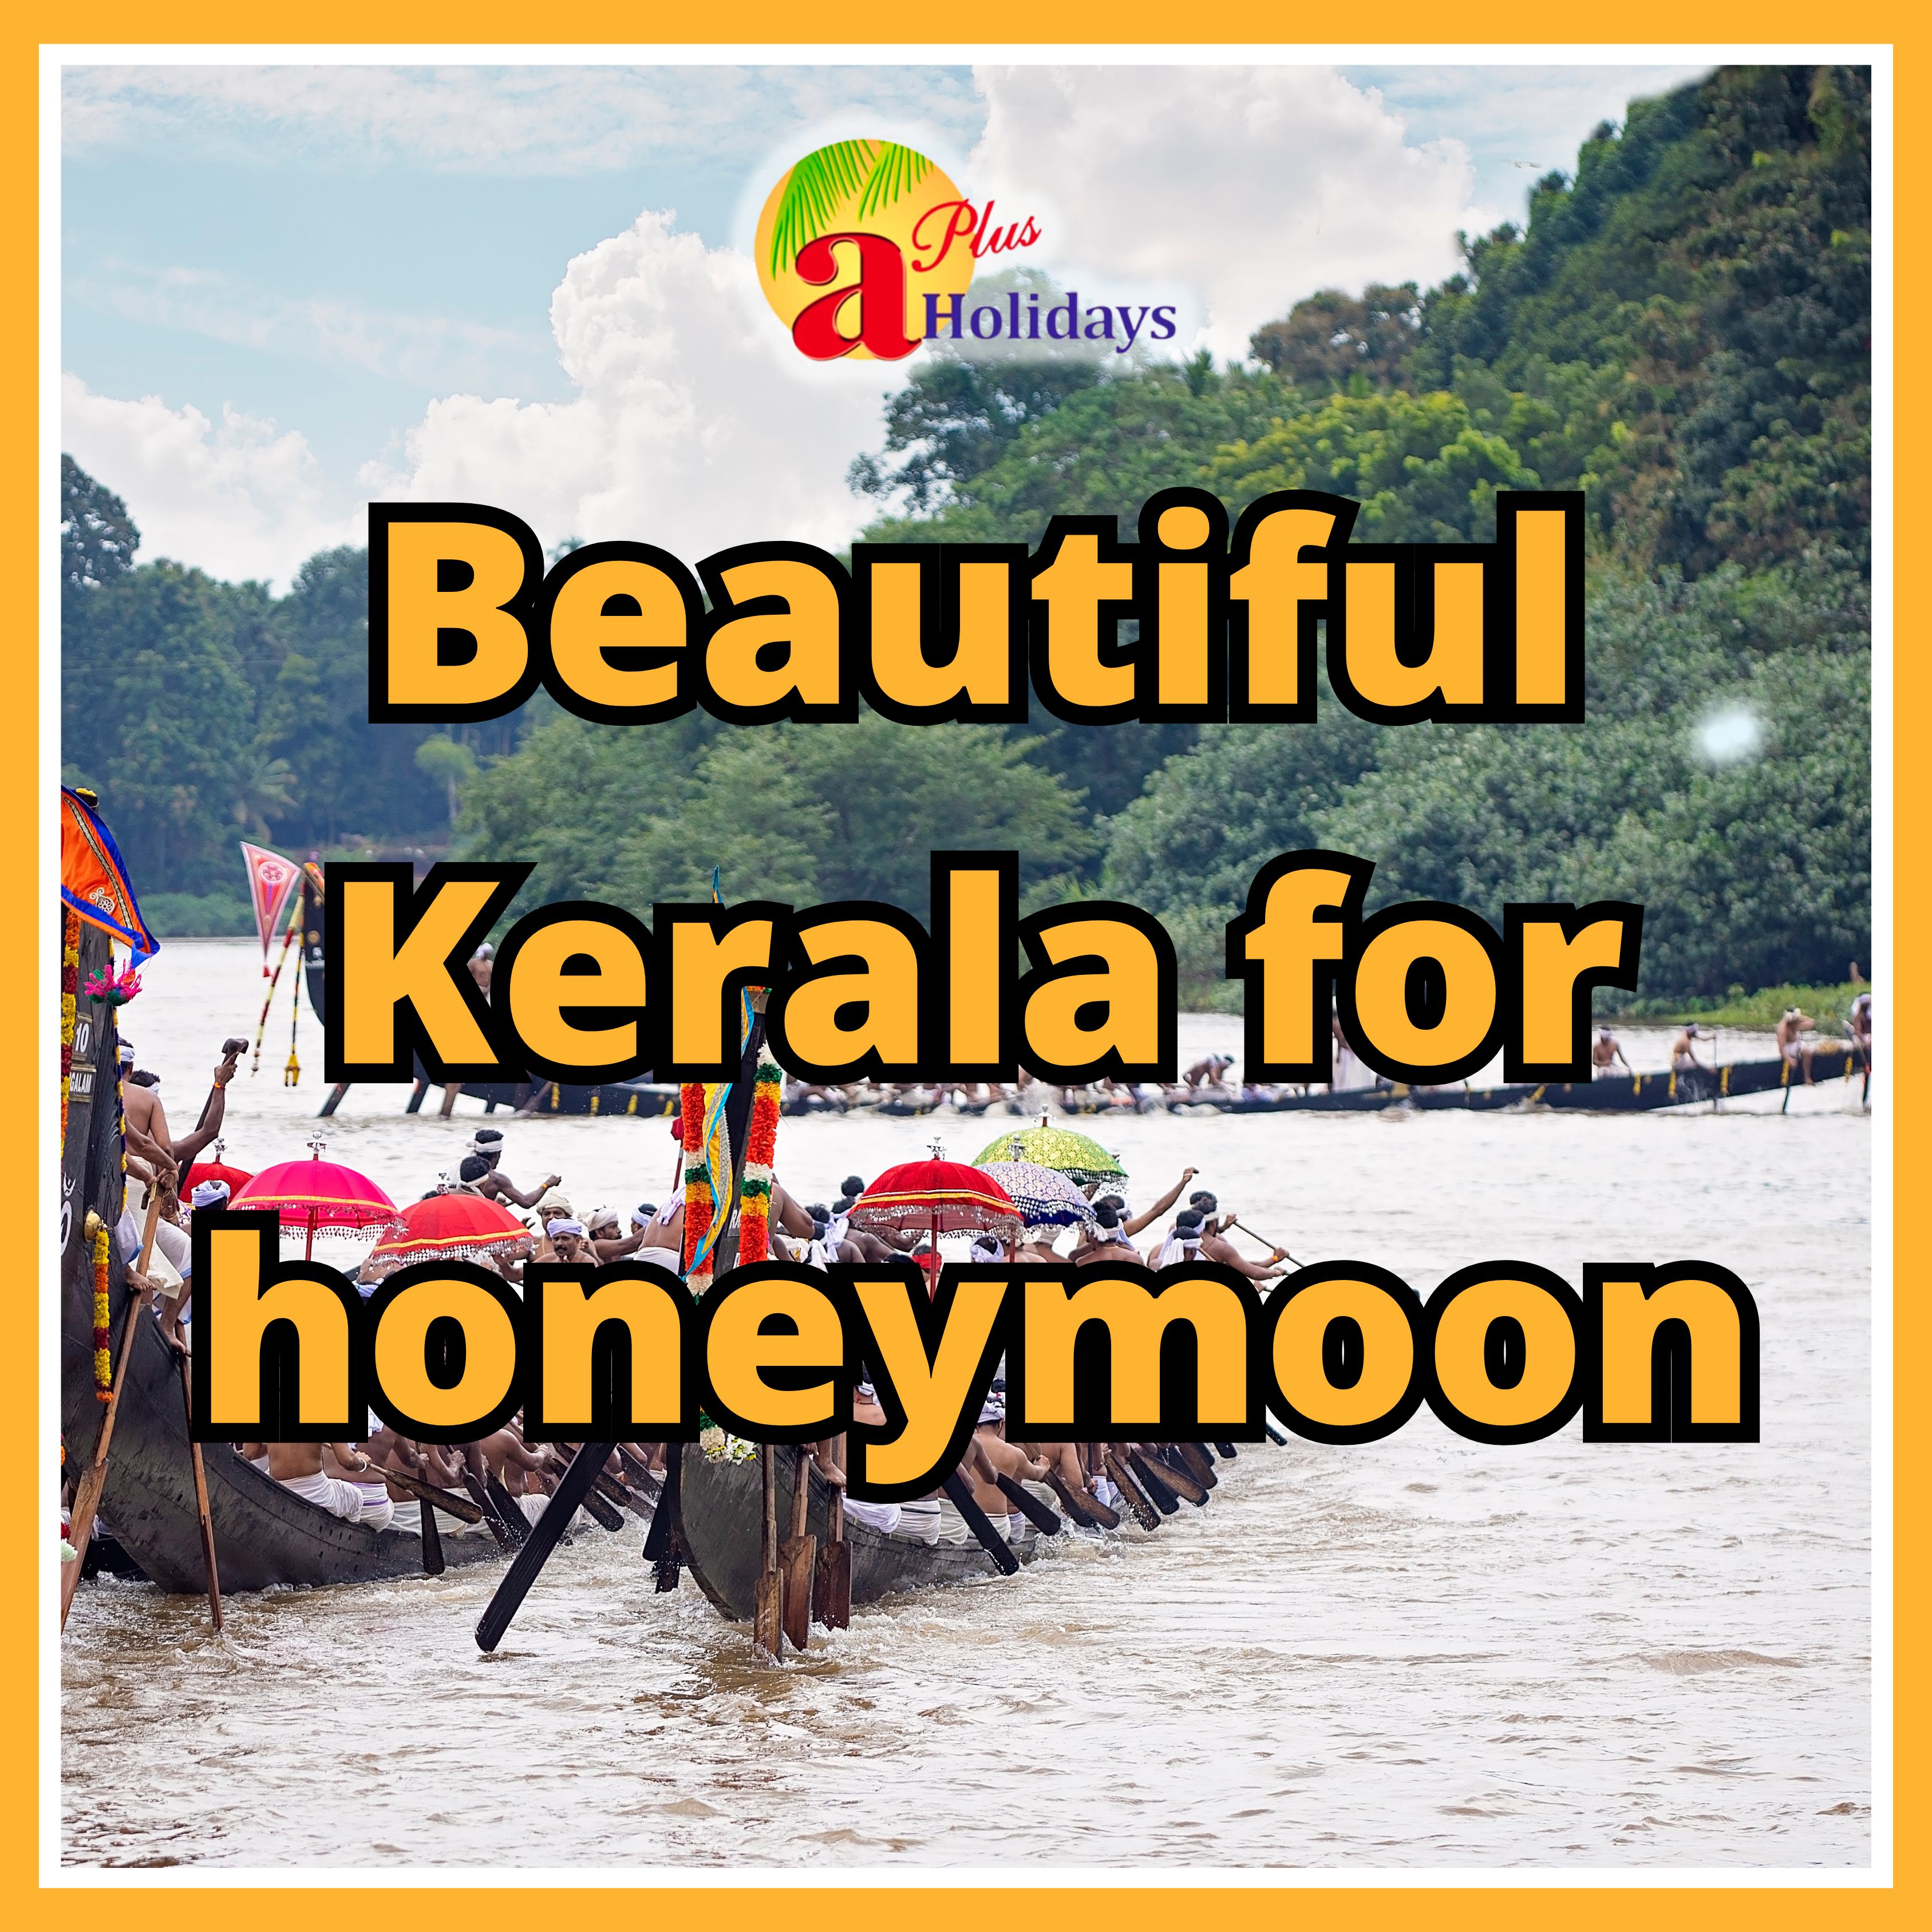 Romantic Retreat: A Honeymoon in Kerala